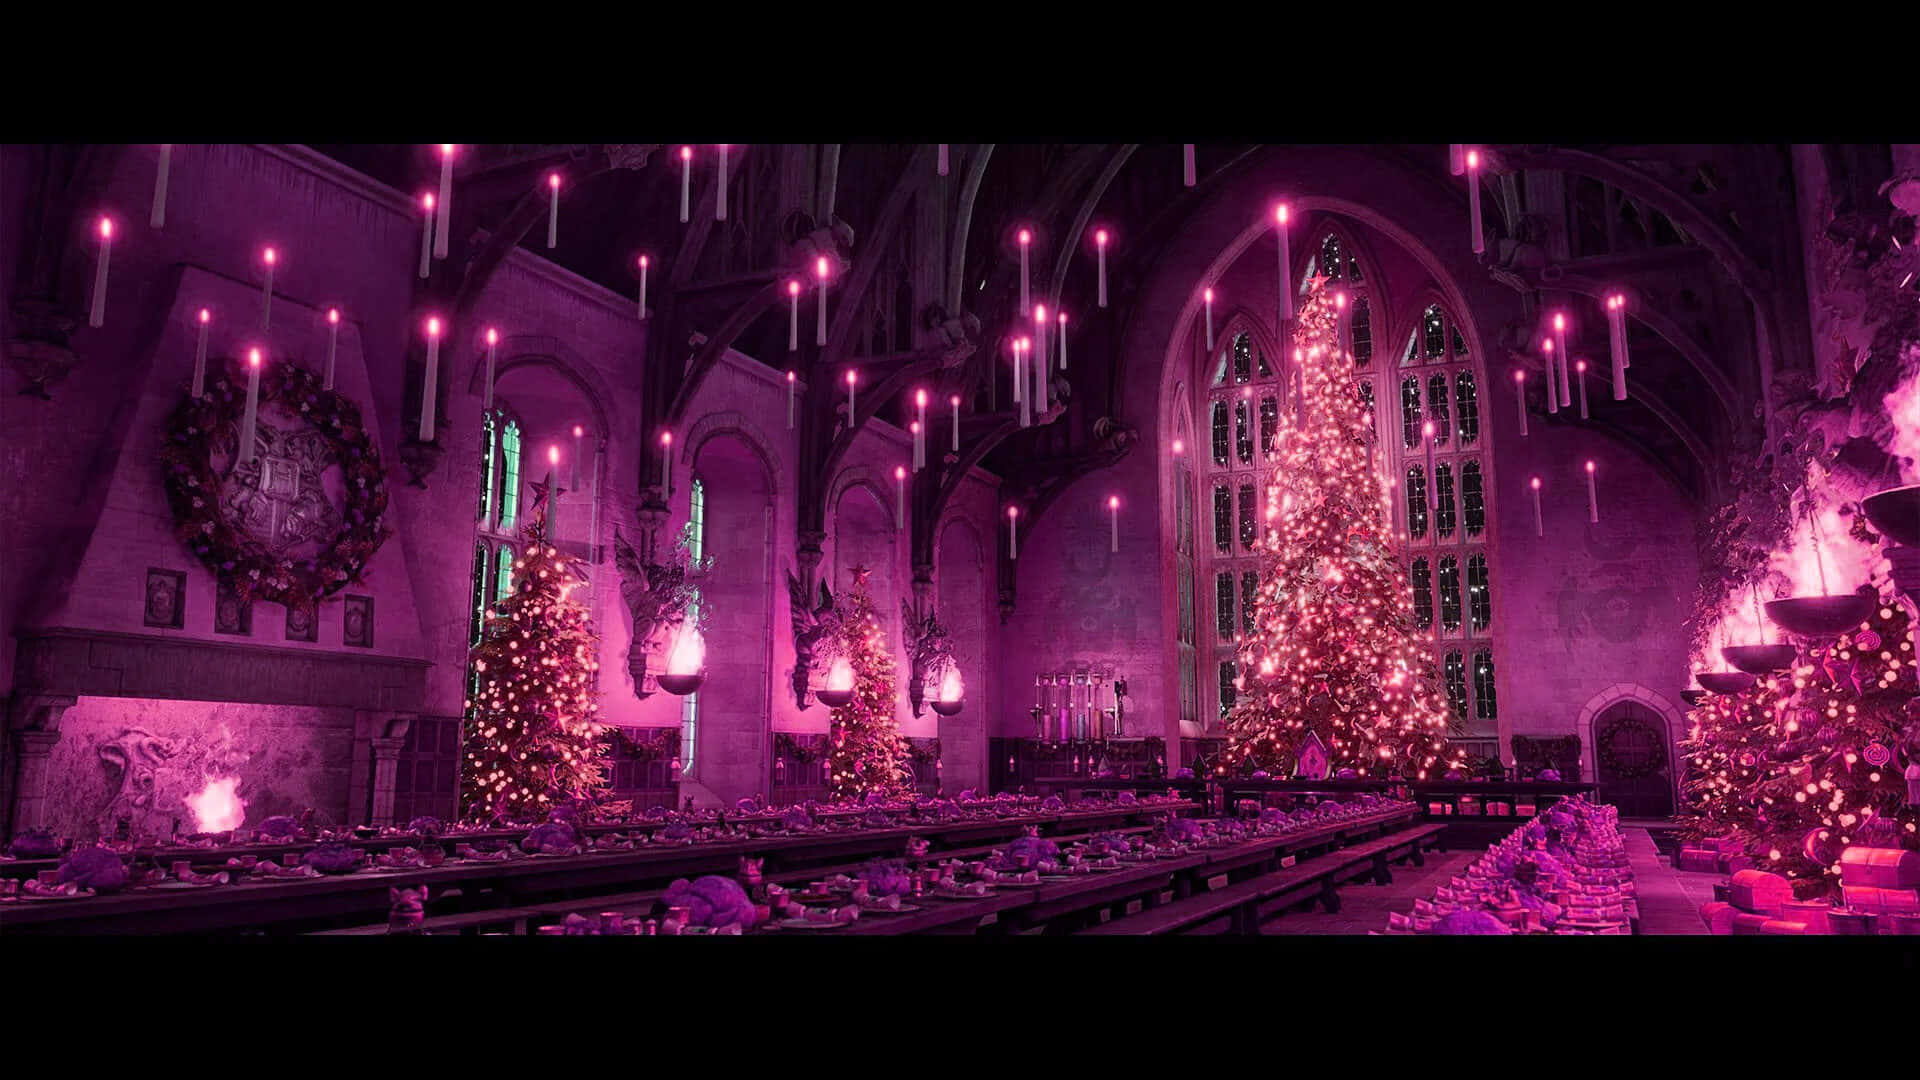 "Christmas at Hogwarts" Wallpaper